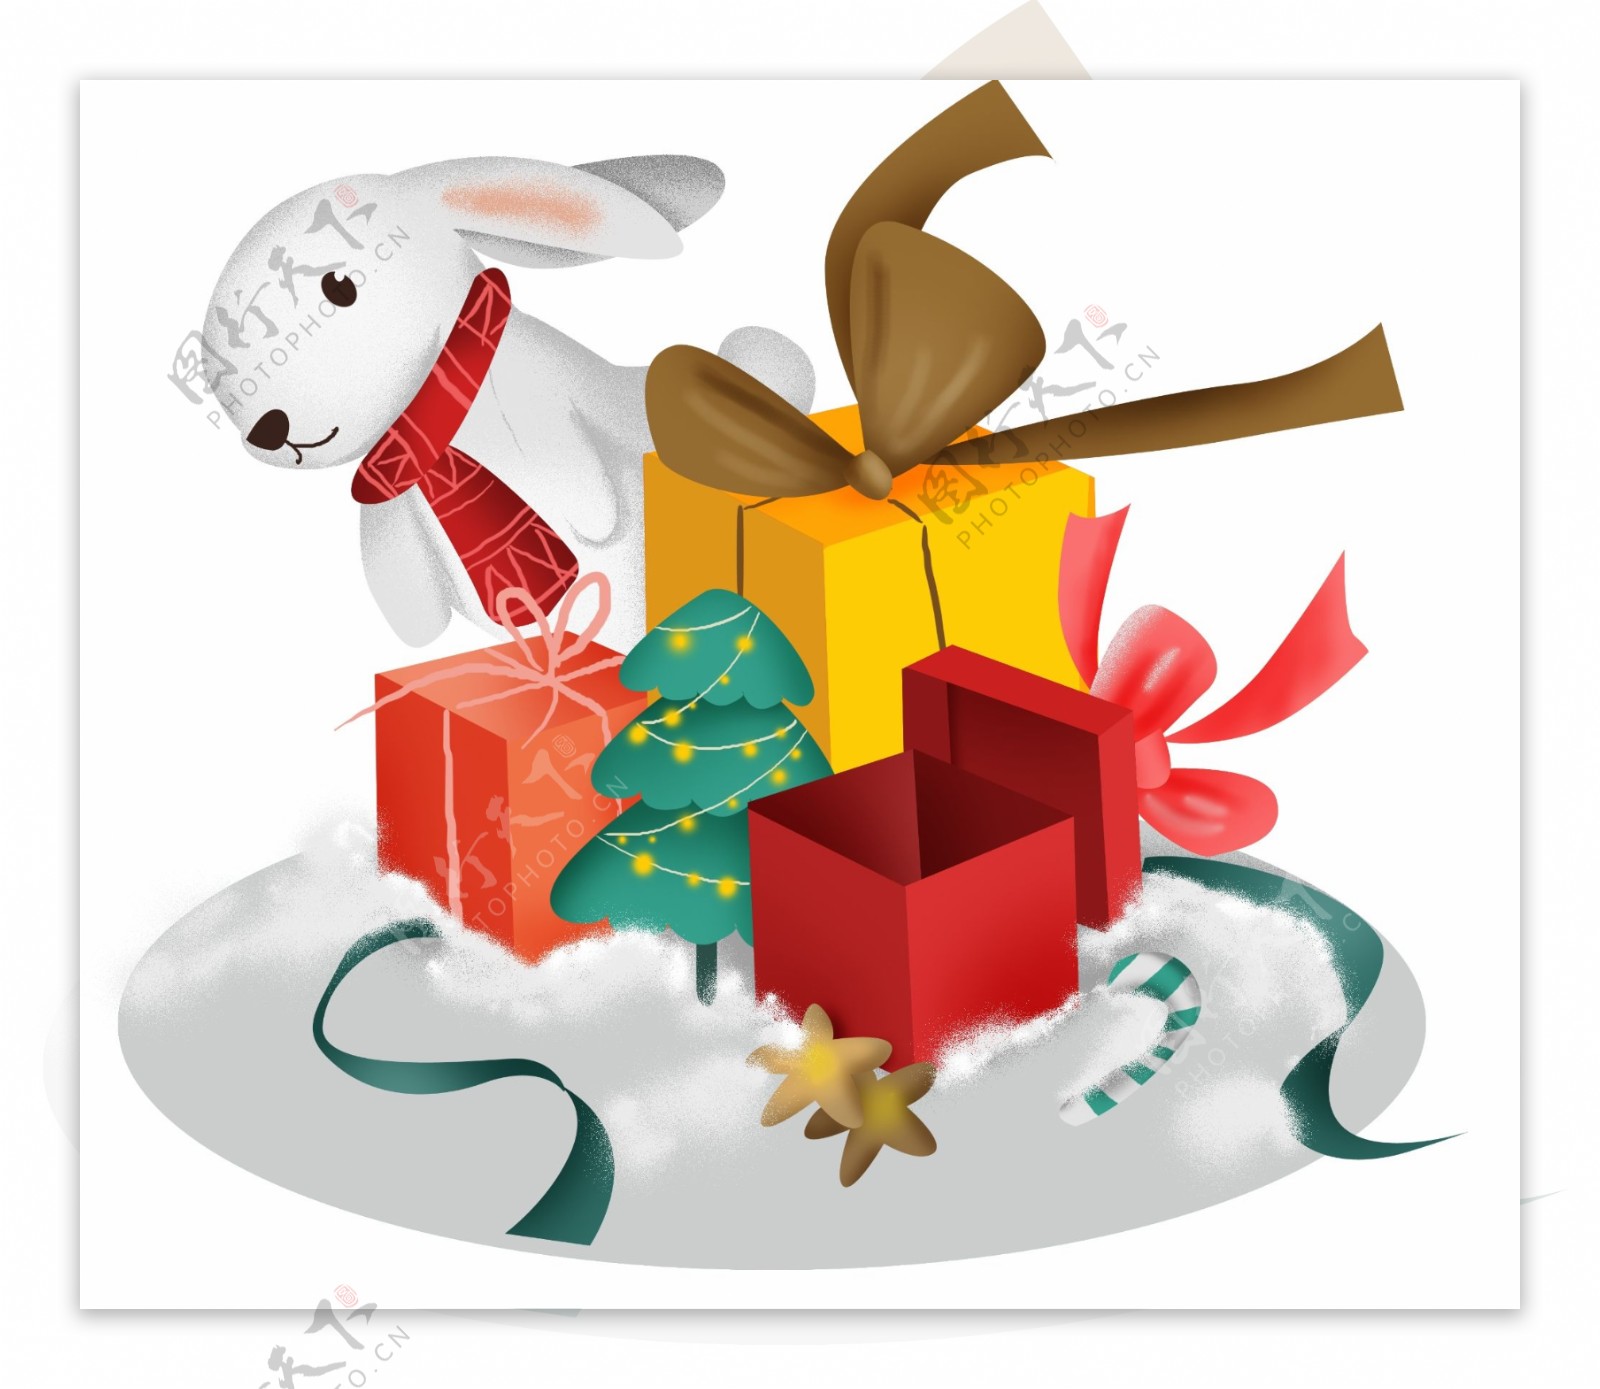 圣诞节礼物和兔子